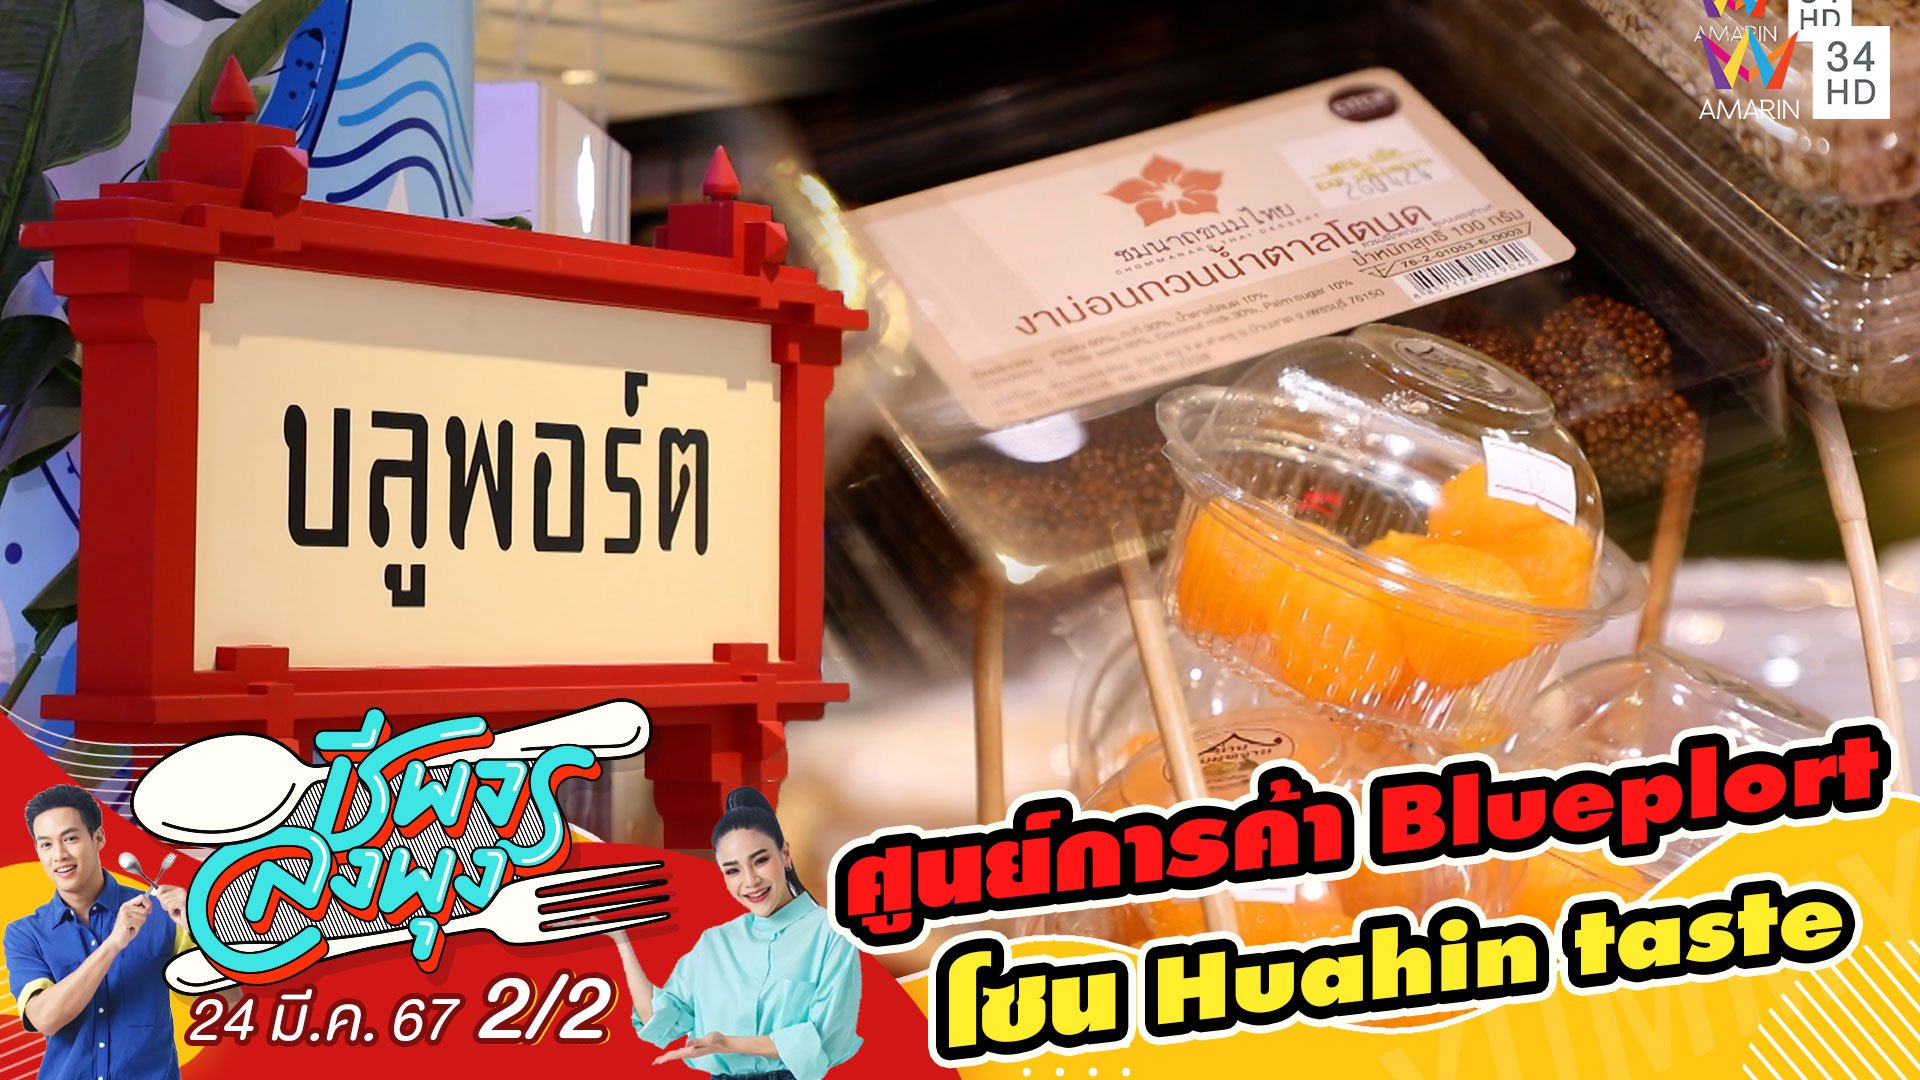 ศูนย์การค้า Bluport โซน Huahin taste | ชีพจรลงพุง | 24 มี.ค. 67 (2/2) | AMARIN TVHD34